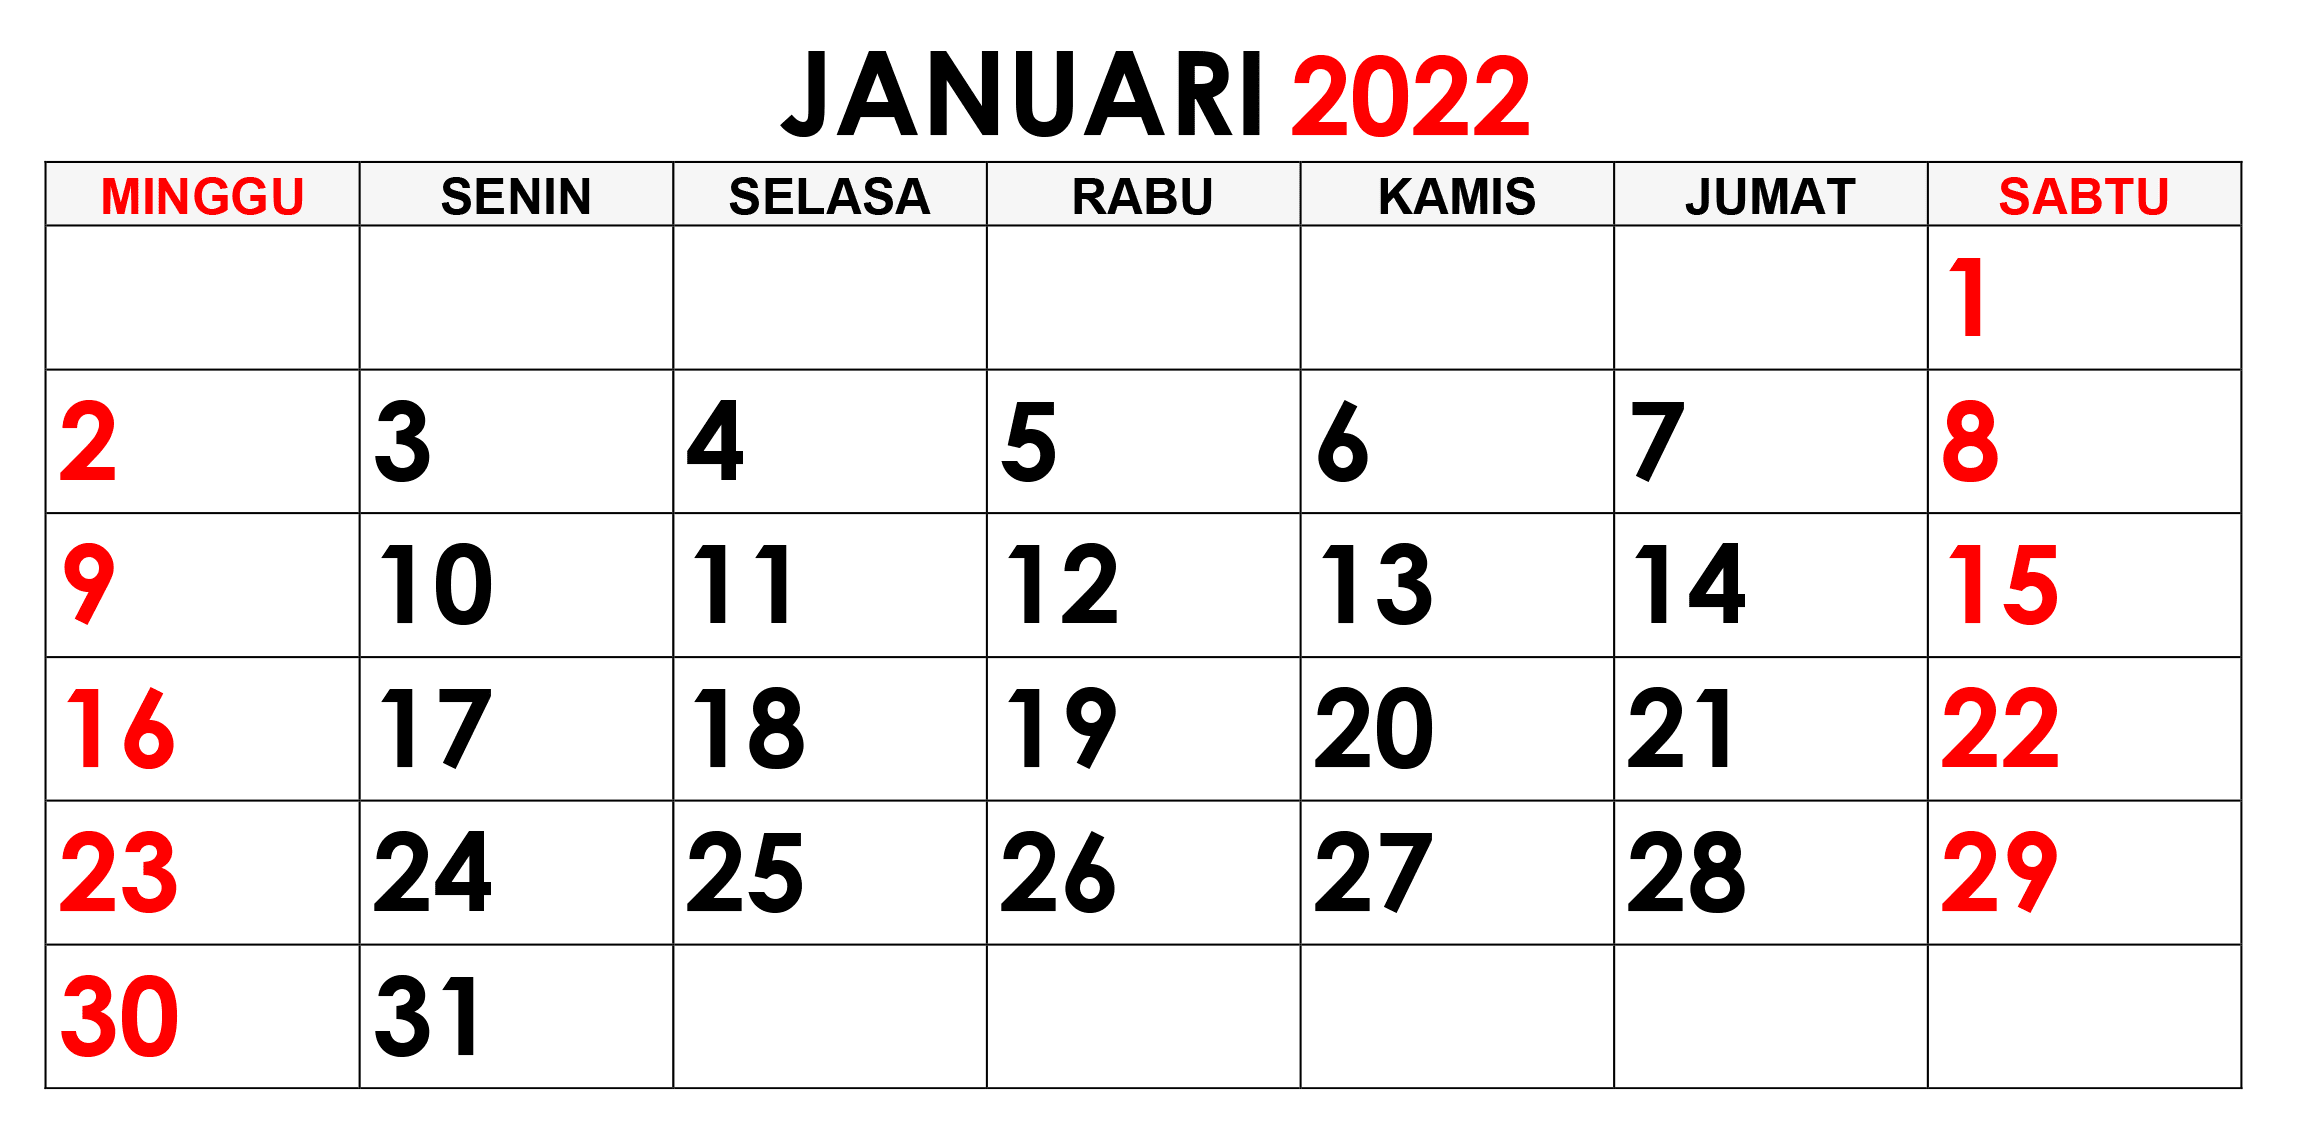 2022 januari tanggalan bulan jawa kalender